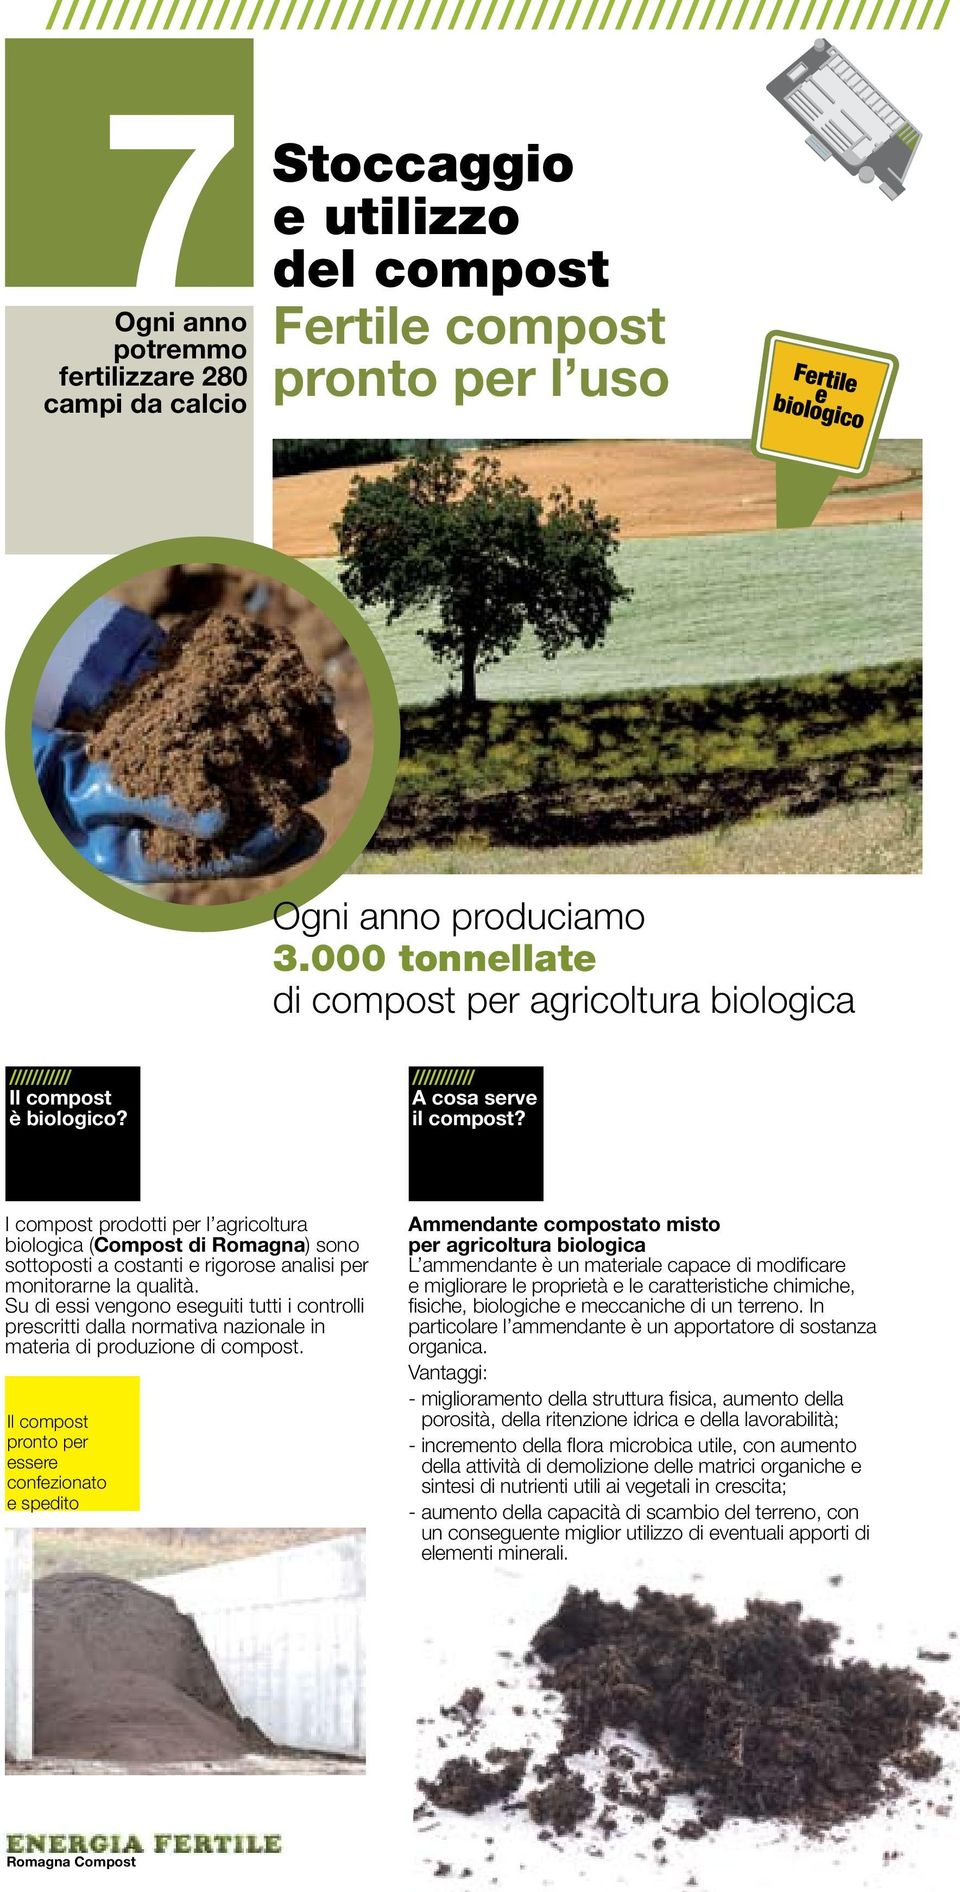 I compost prodotti per l agricoltura biologica (Compost di Romagna) sono sottoposti a costanti e rigorose analisi per monitorarne la qualità.